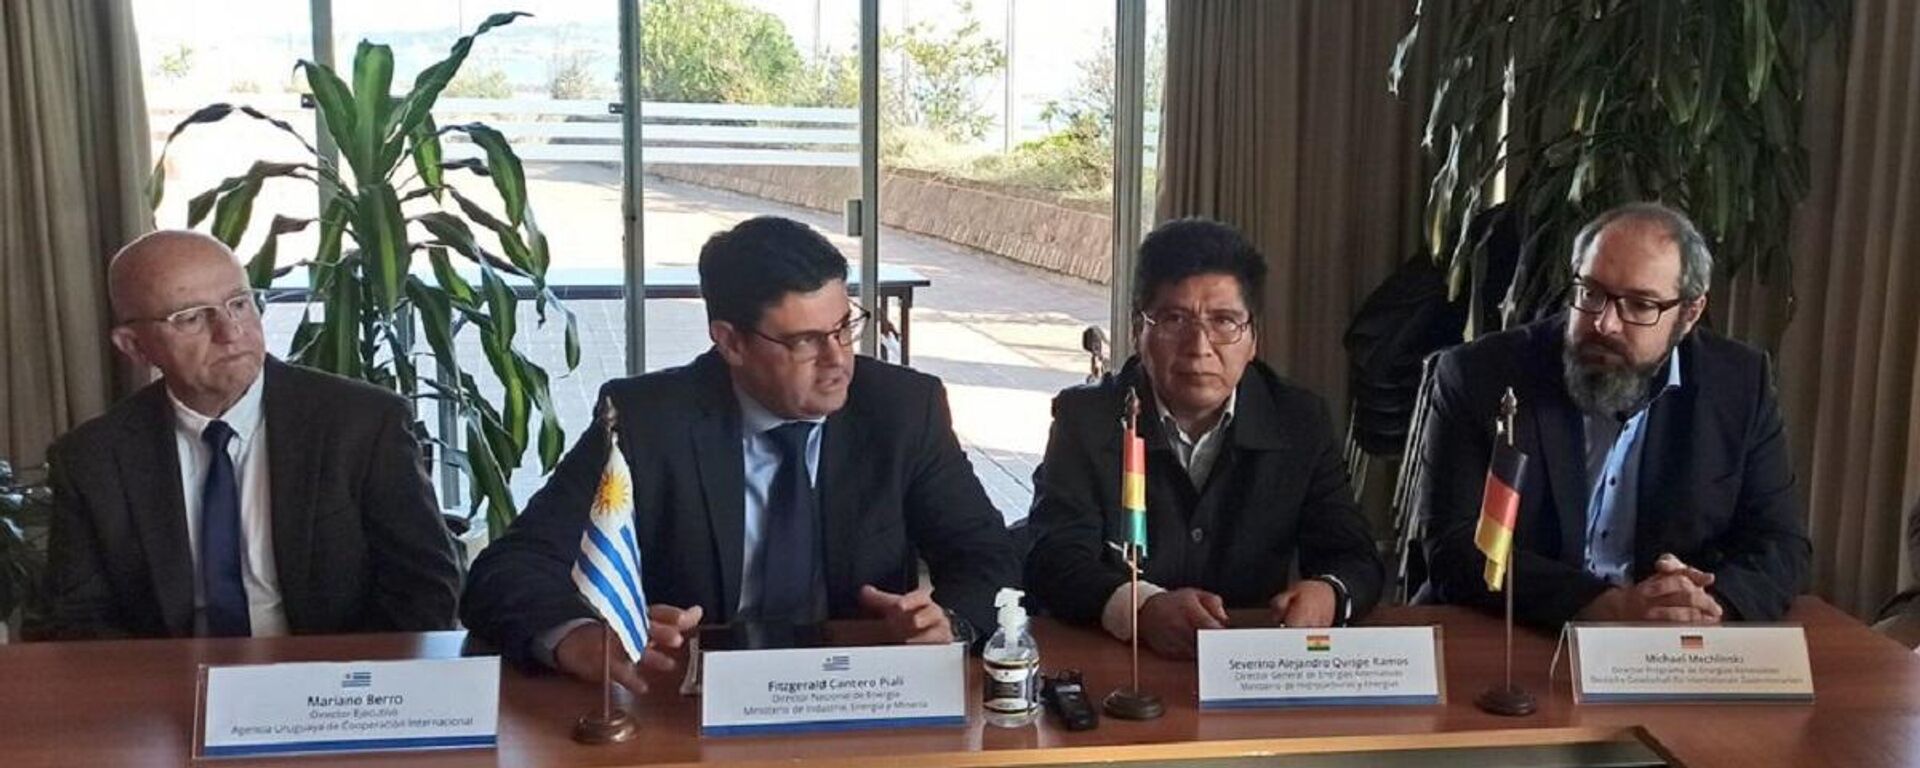 Reunión sobre energías renovables entre autoridades del área energética de Bolivia y Uruguay - Sputnik Mundo, 1920, 05.09.2022